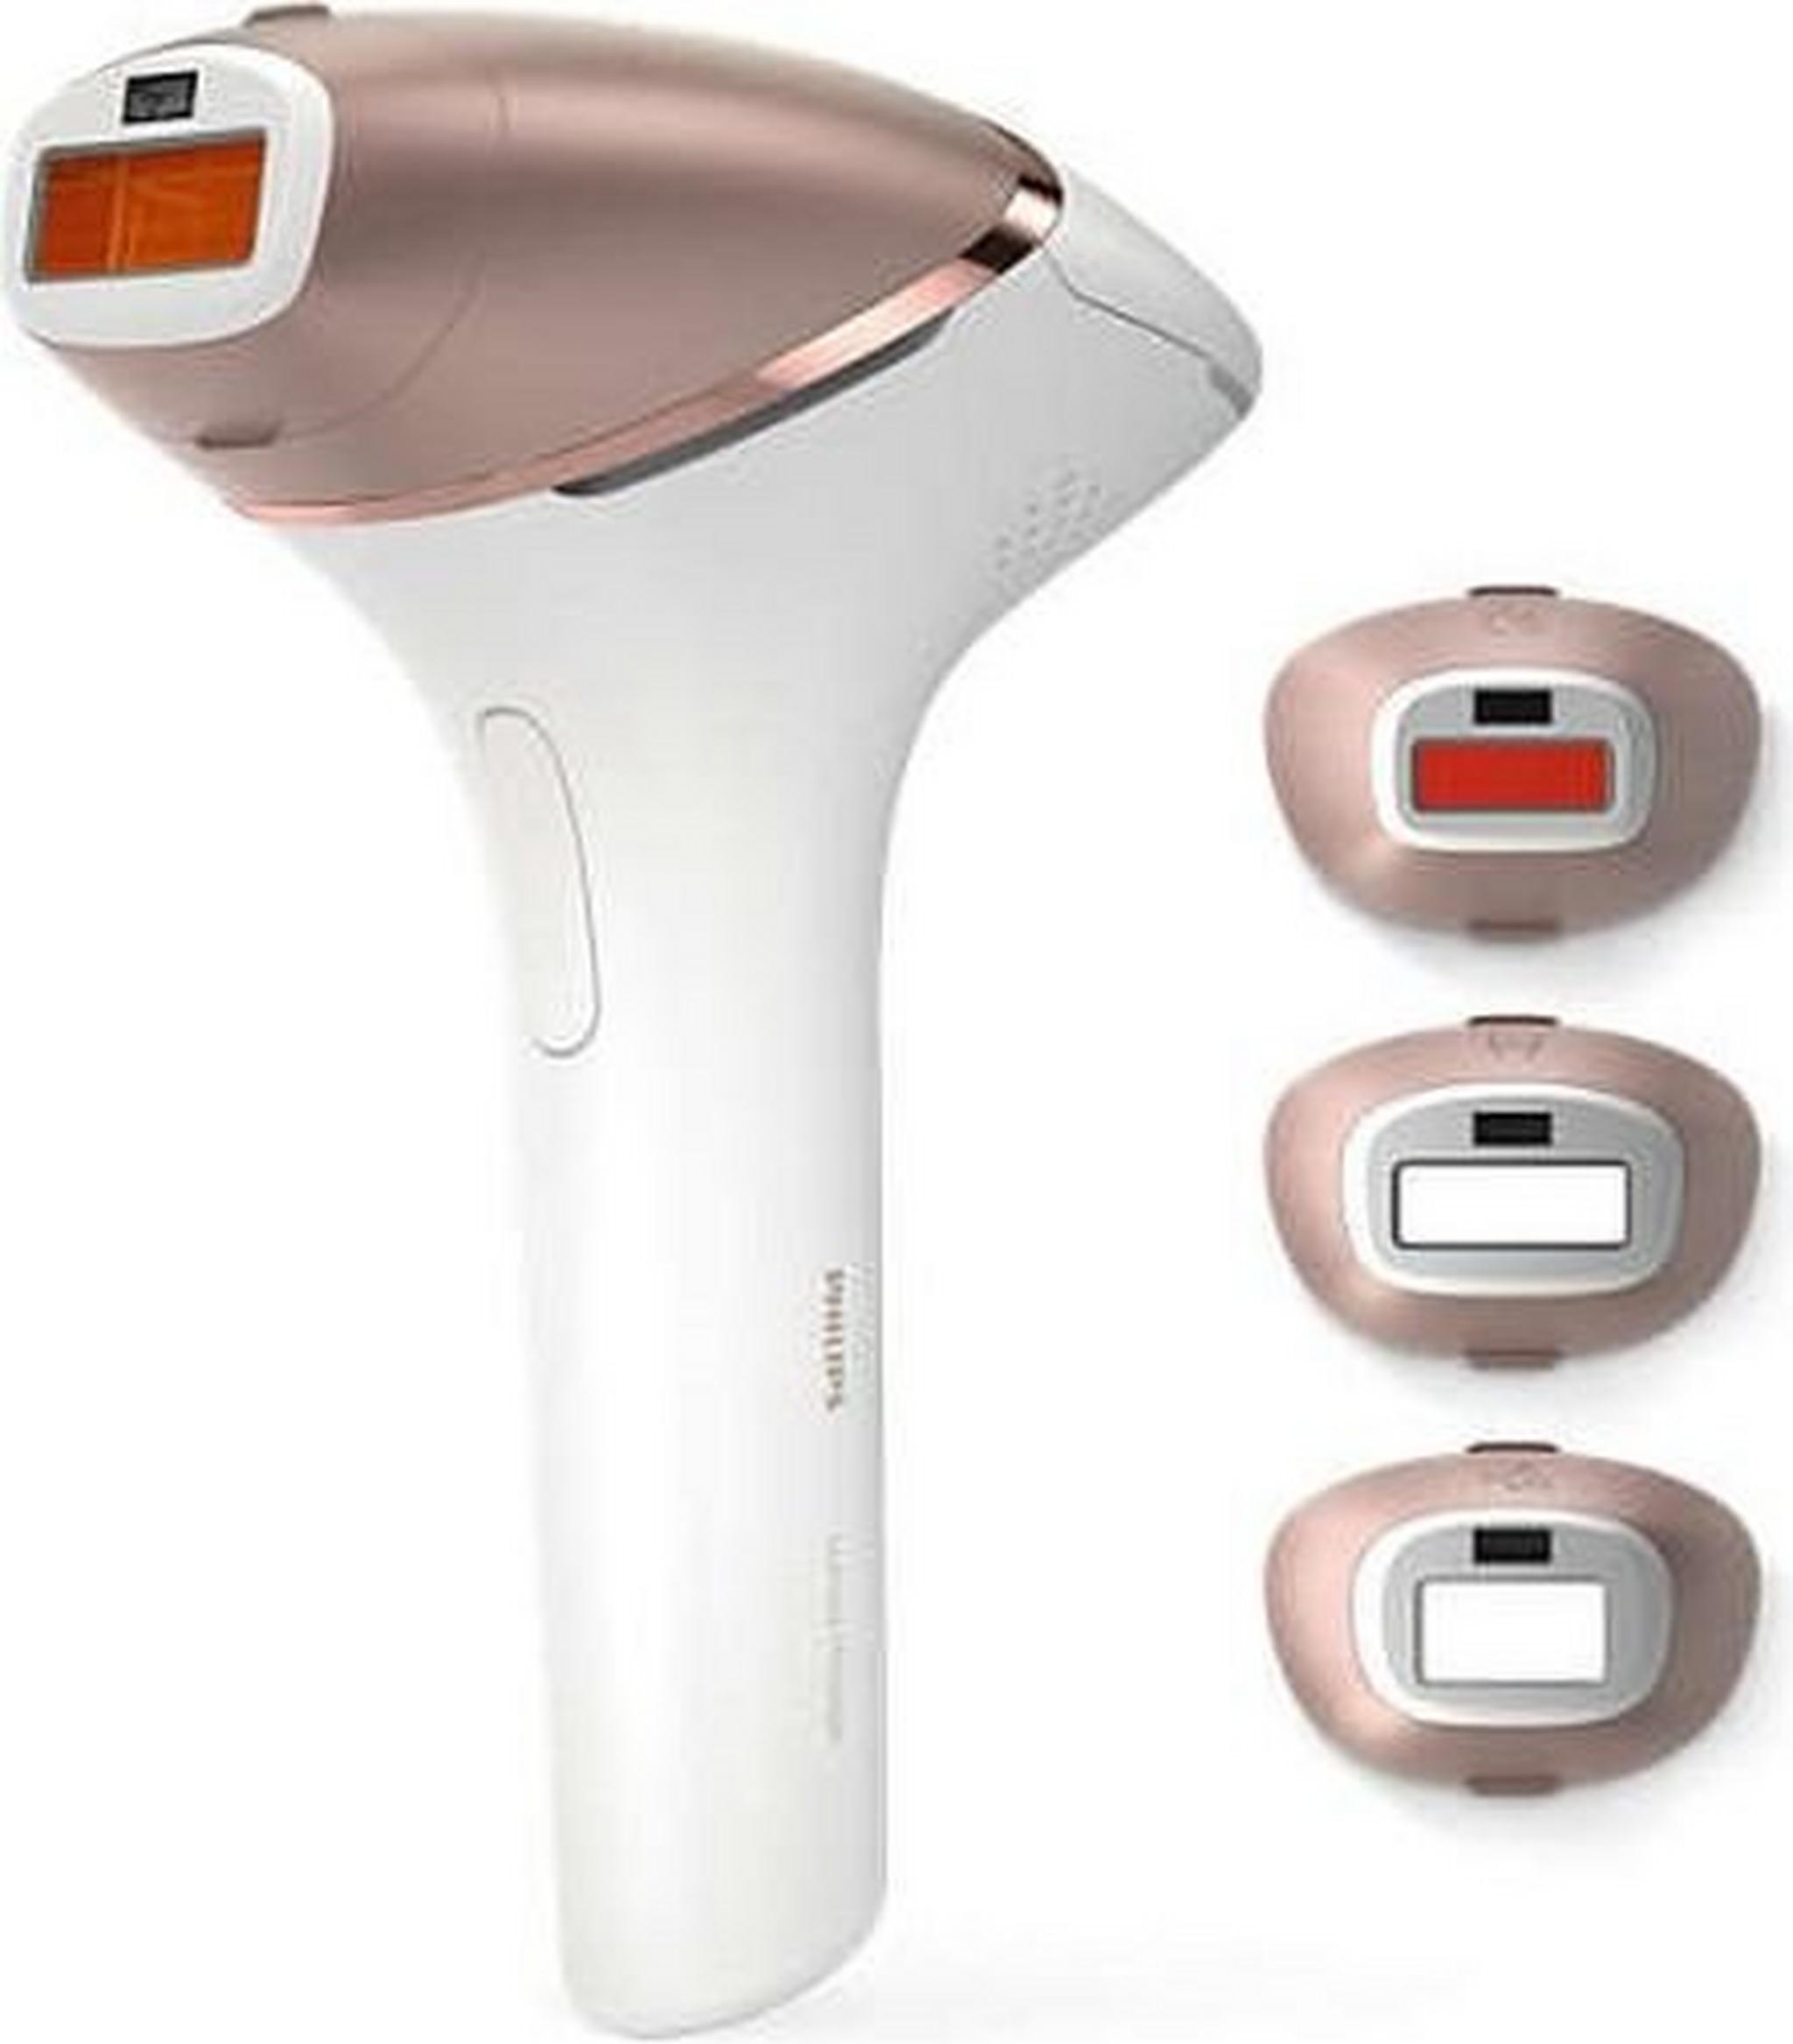 فيليبس لوميا برستيج الماكينة اللاسلكية لإزالة الشعر بتقنية الضوء النبضي المكثف - ٤ ملحقات (BRI956/60)